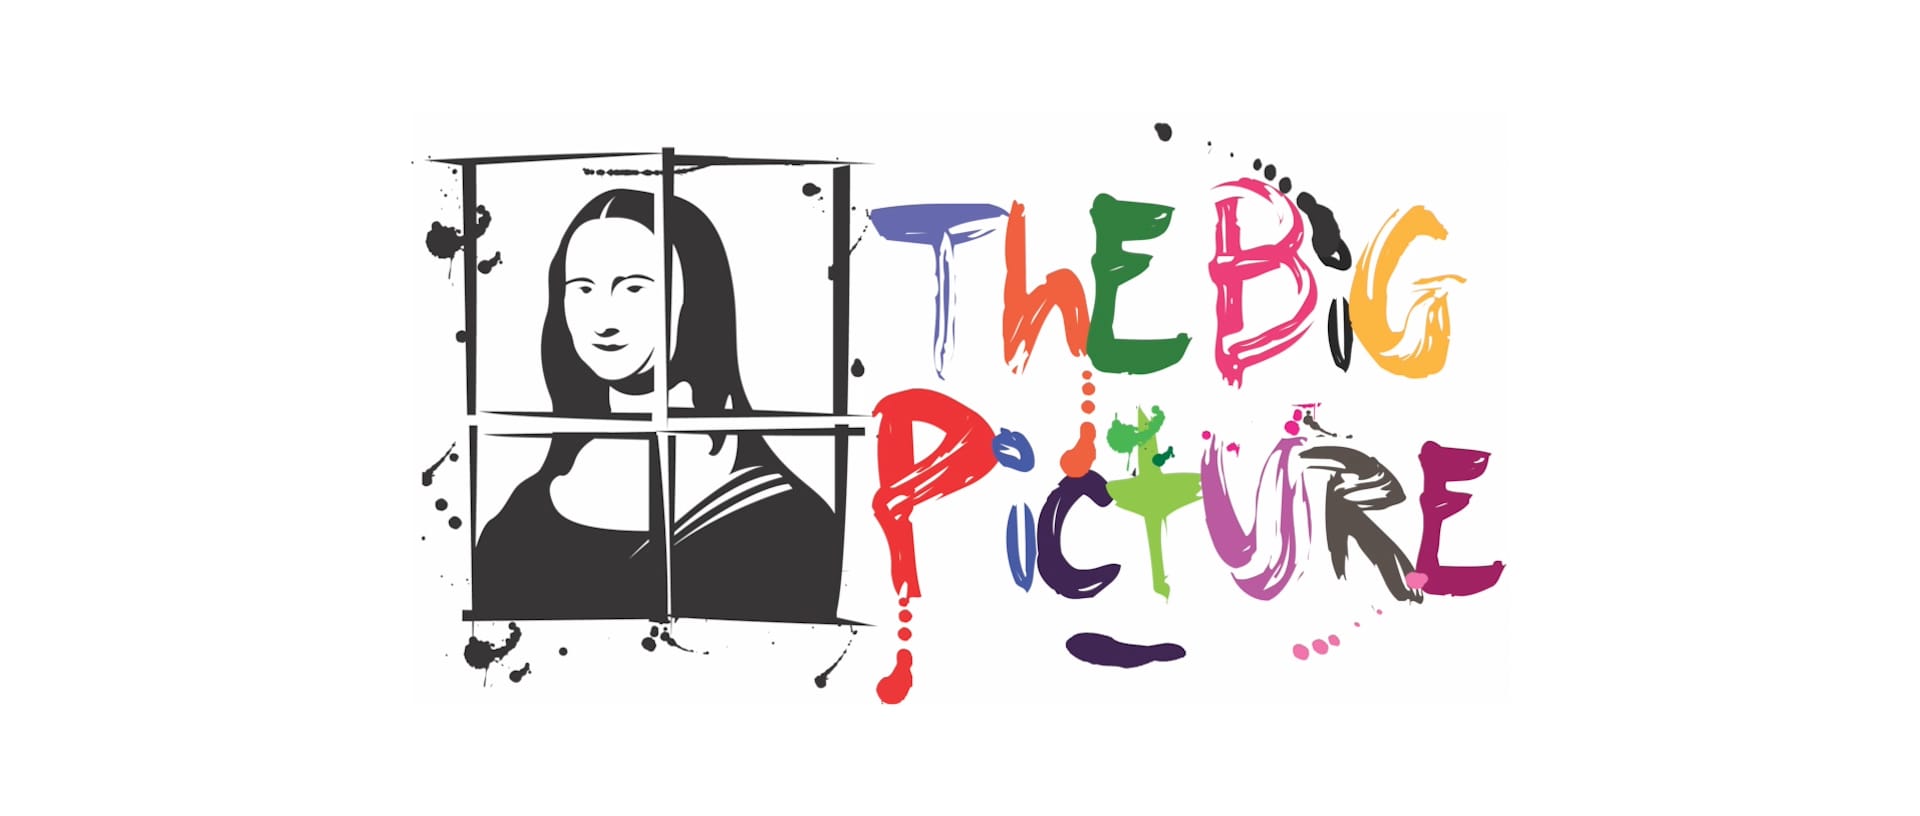 The Big Picture event konferencia aktivita logo